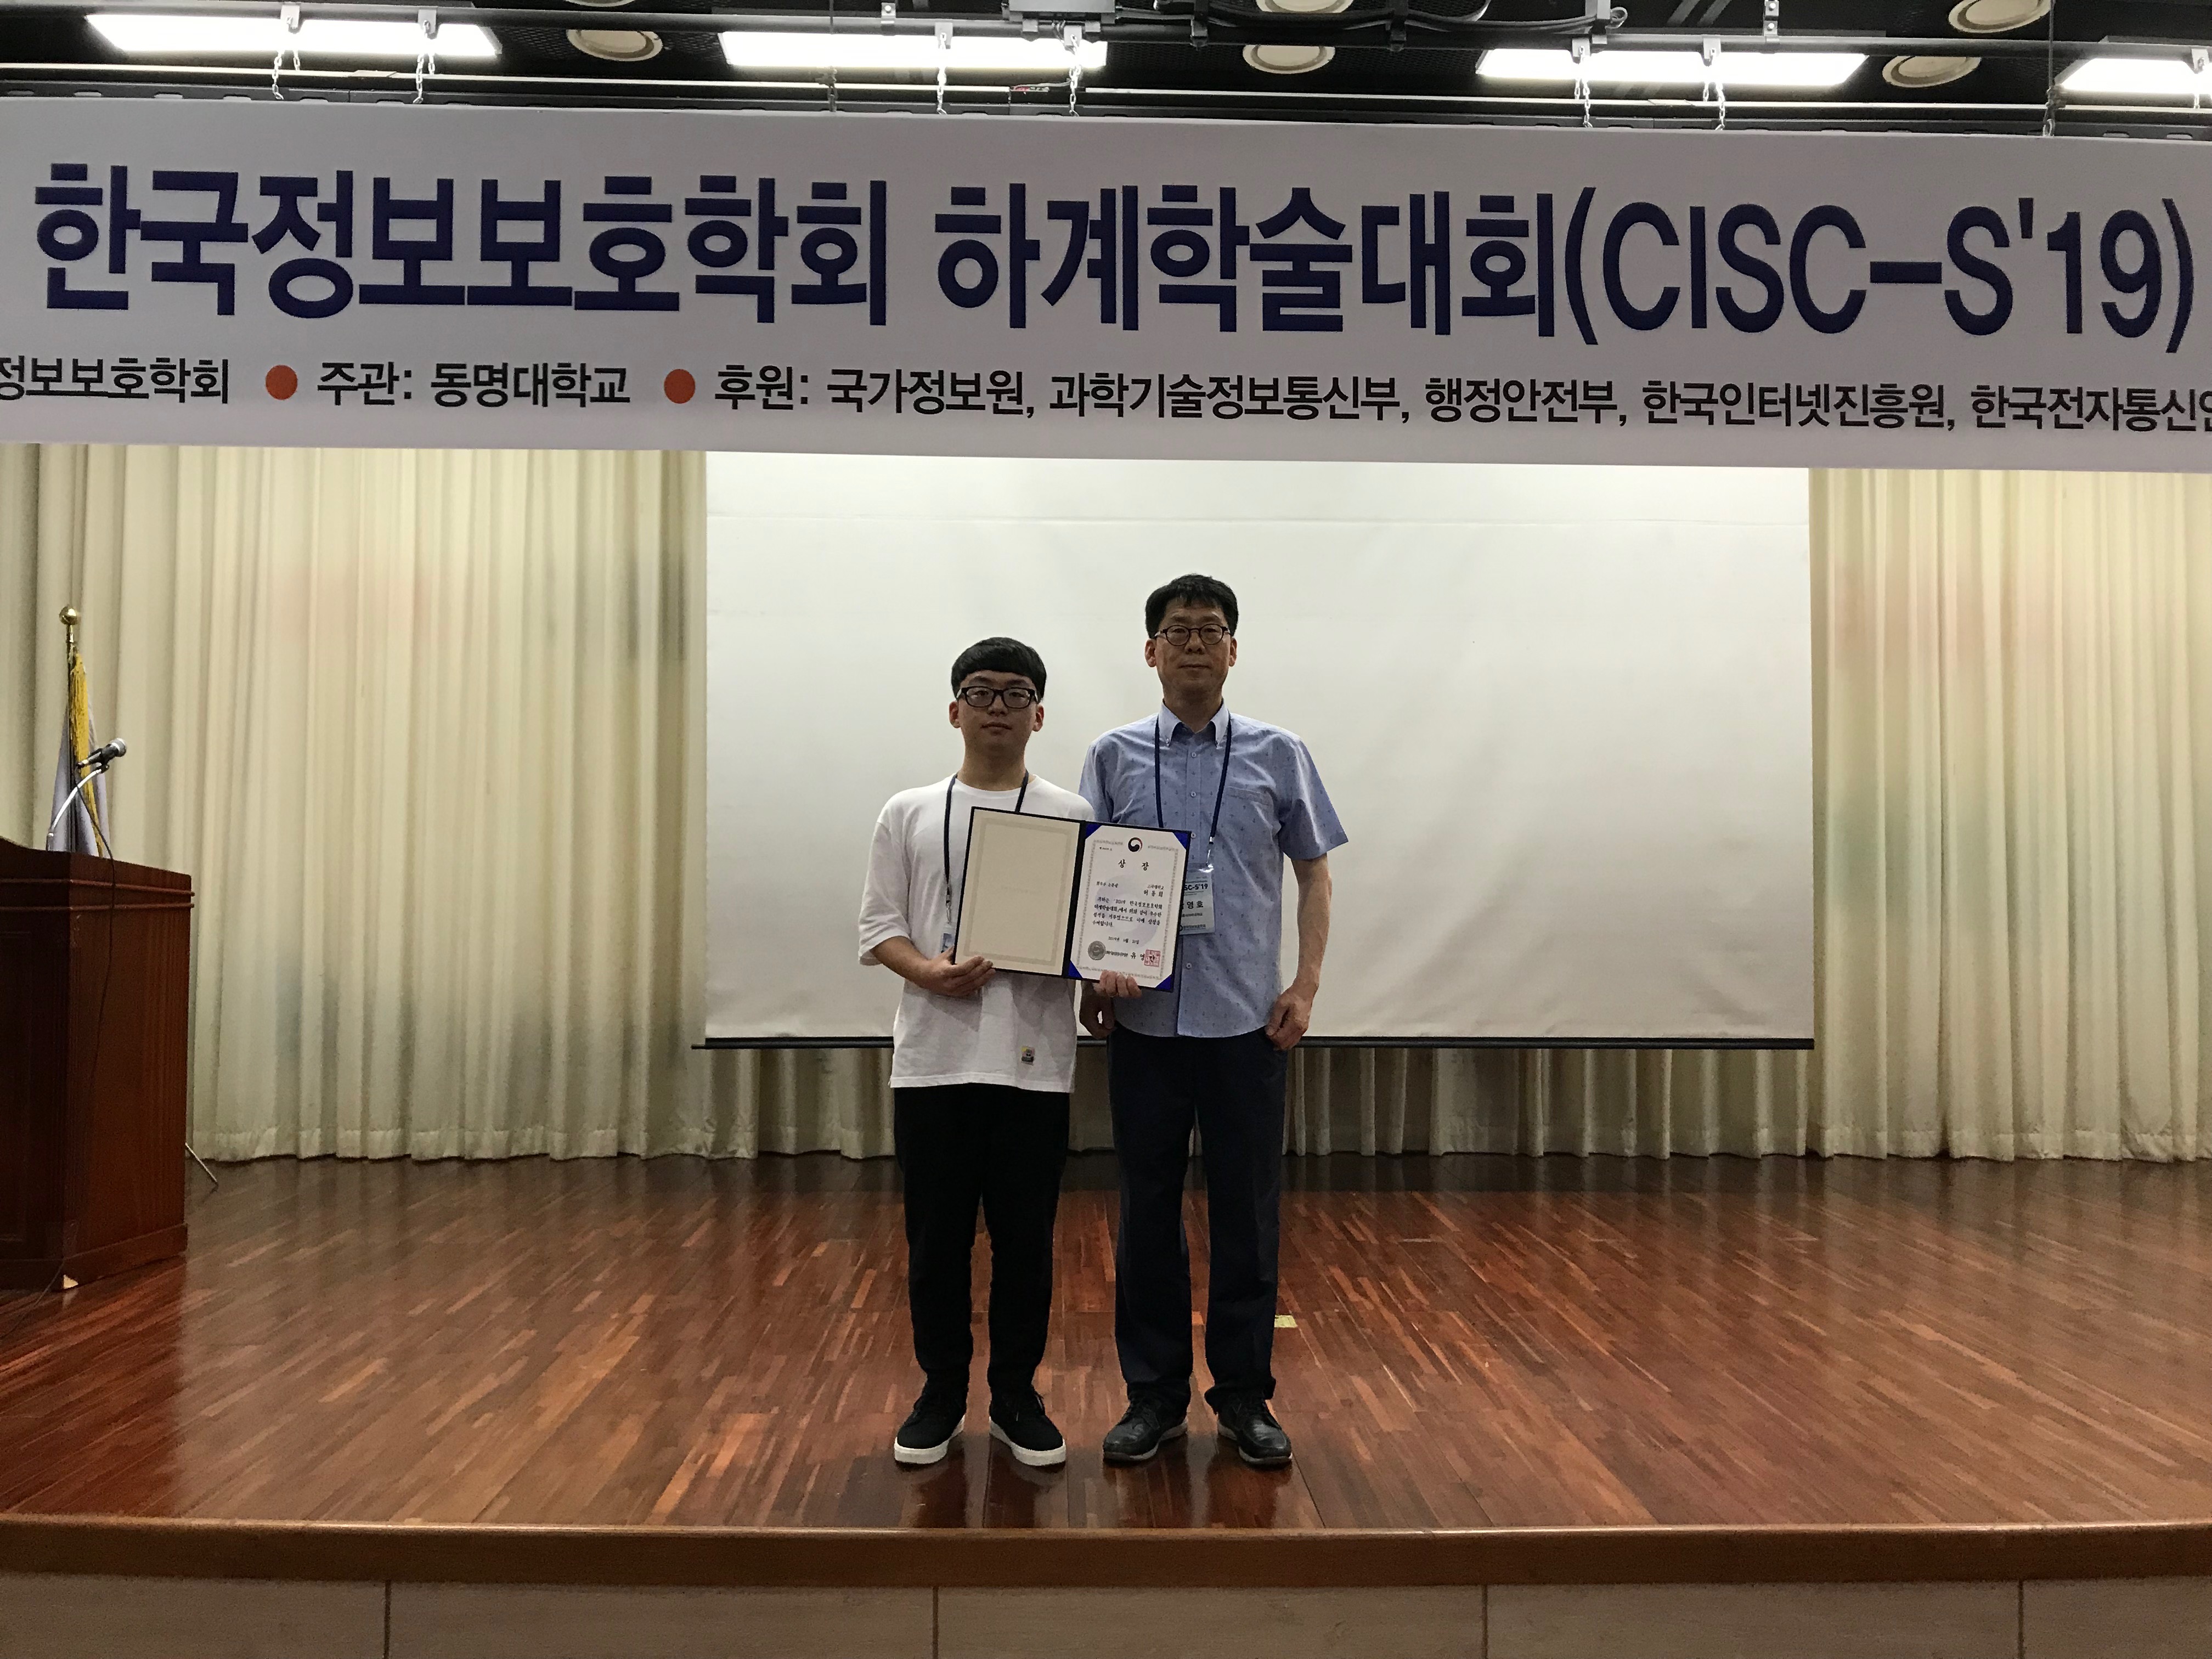 세종사이버대학교, 2019 한국정보보호학회 하계학술대회(CISC-S 19) 양자내성암호 기술 최우수상 수상